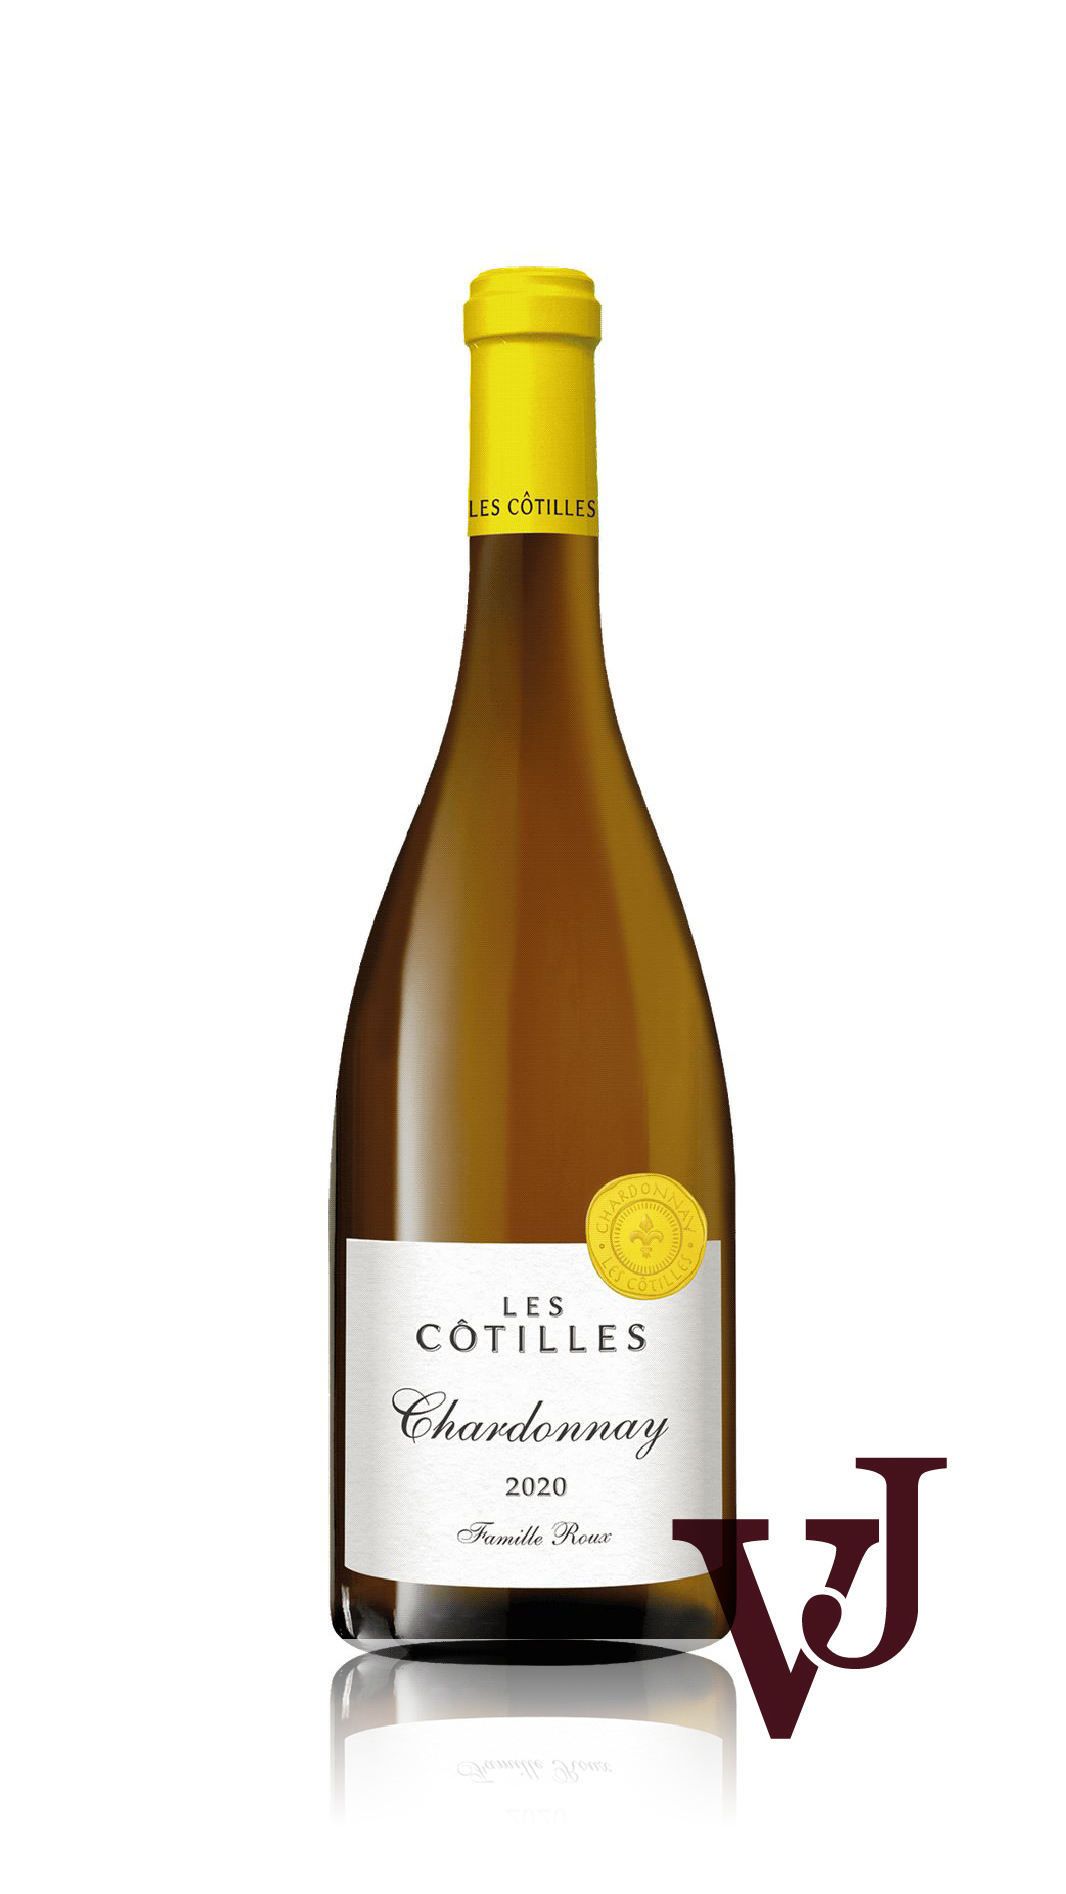 Vitt Vin - Les Côtilles Chardonnay artikel nummer 5203601 från producenten Roux Père & Fils från området Frankrike